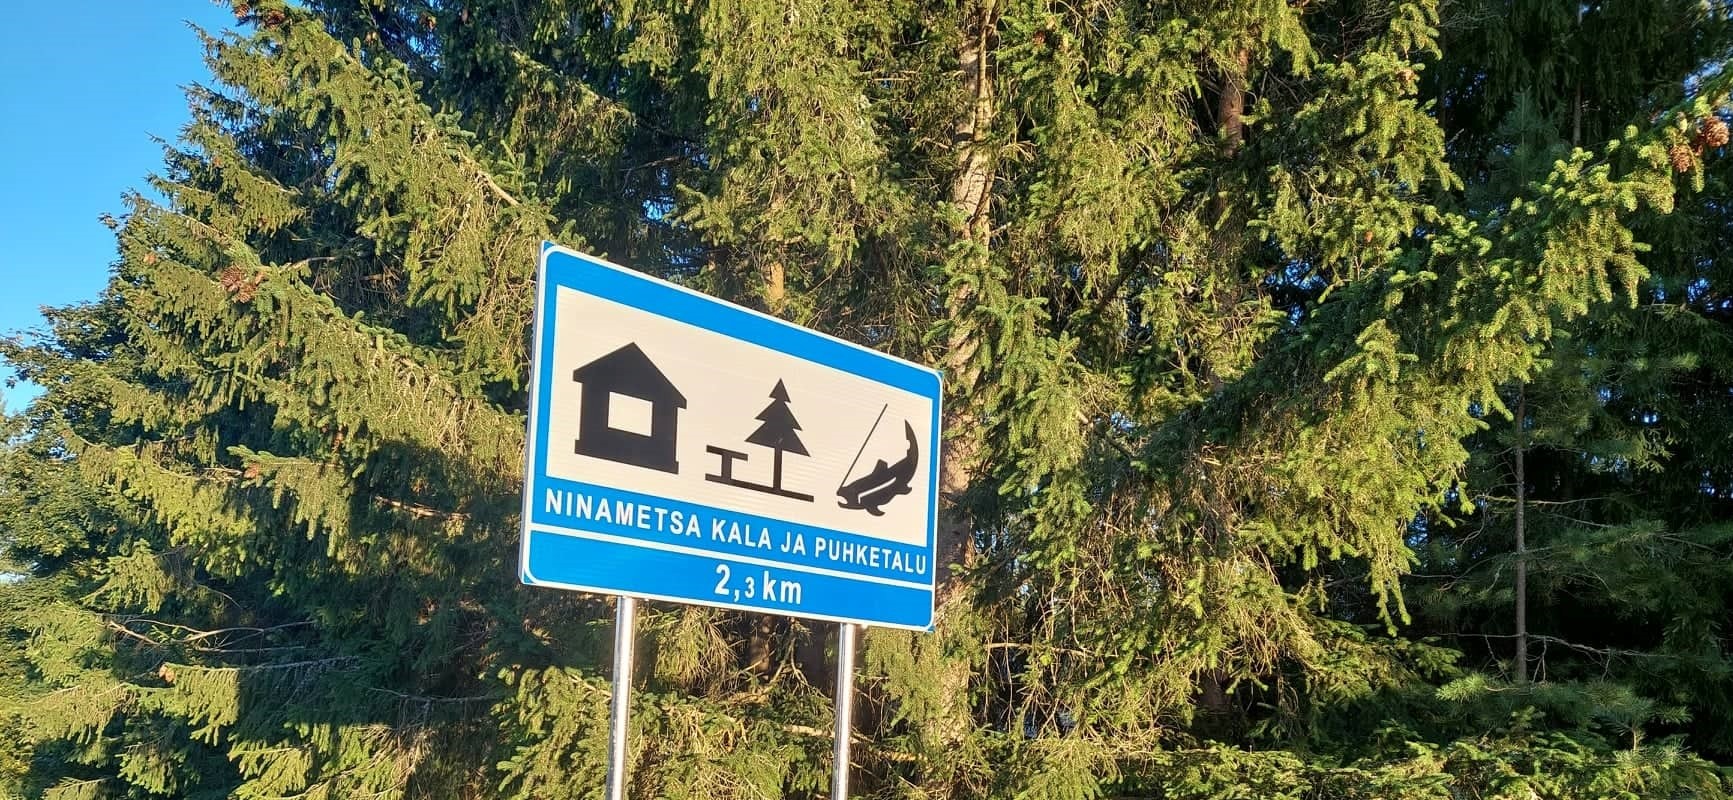 Ninametsa Kala ja Puhketalu